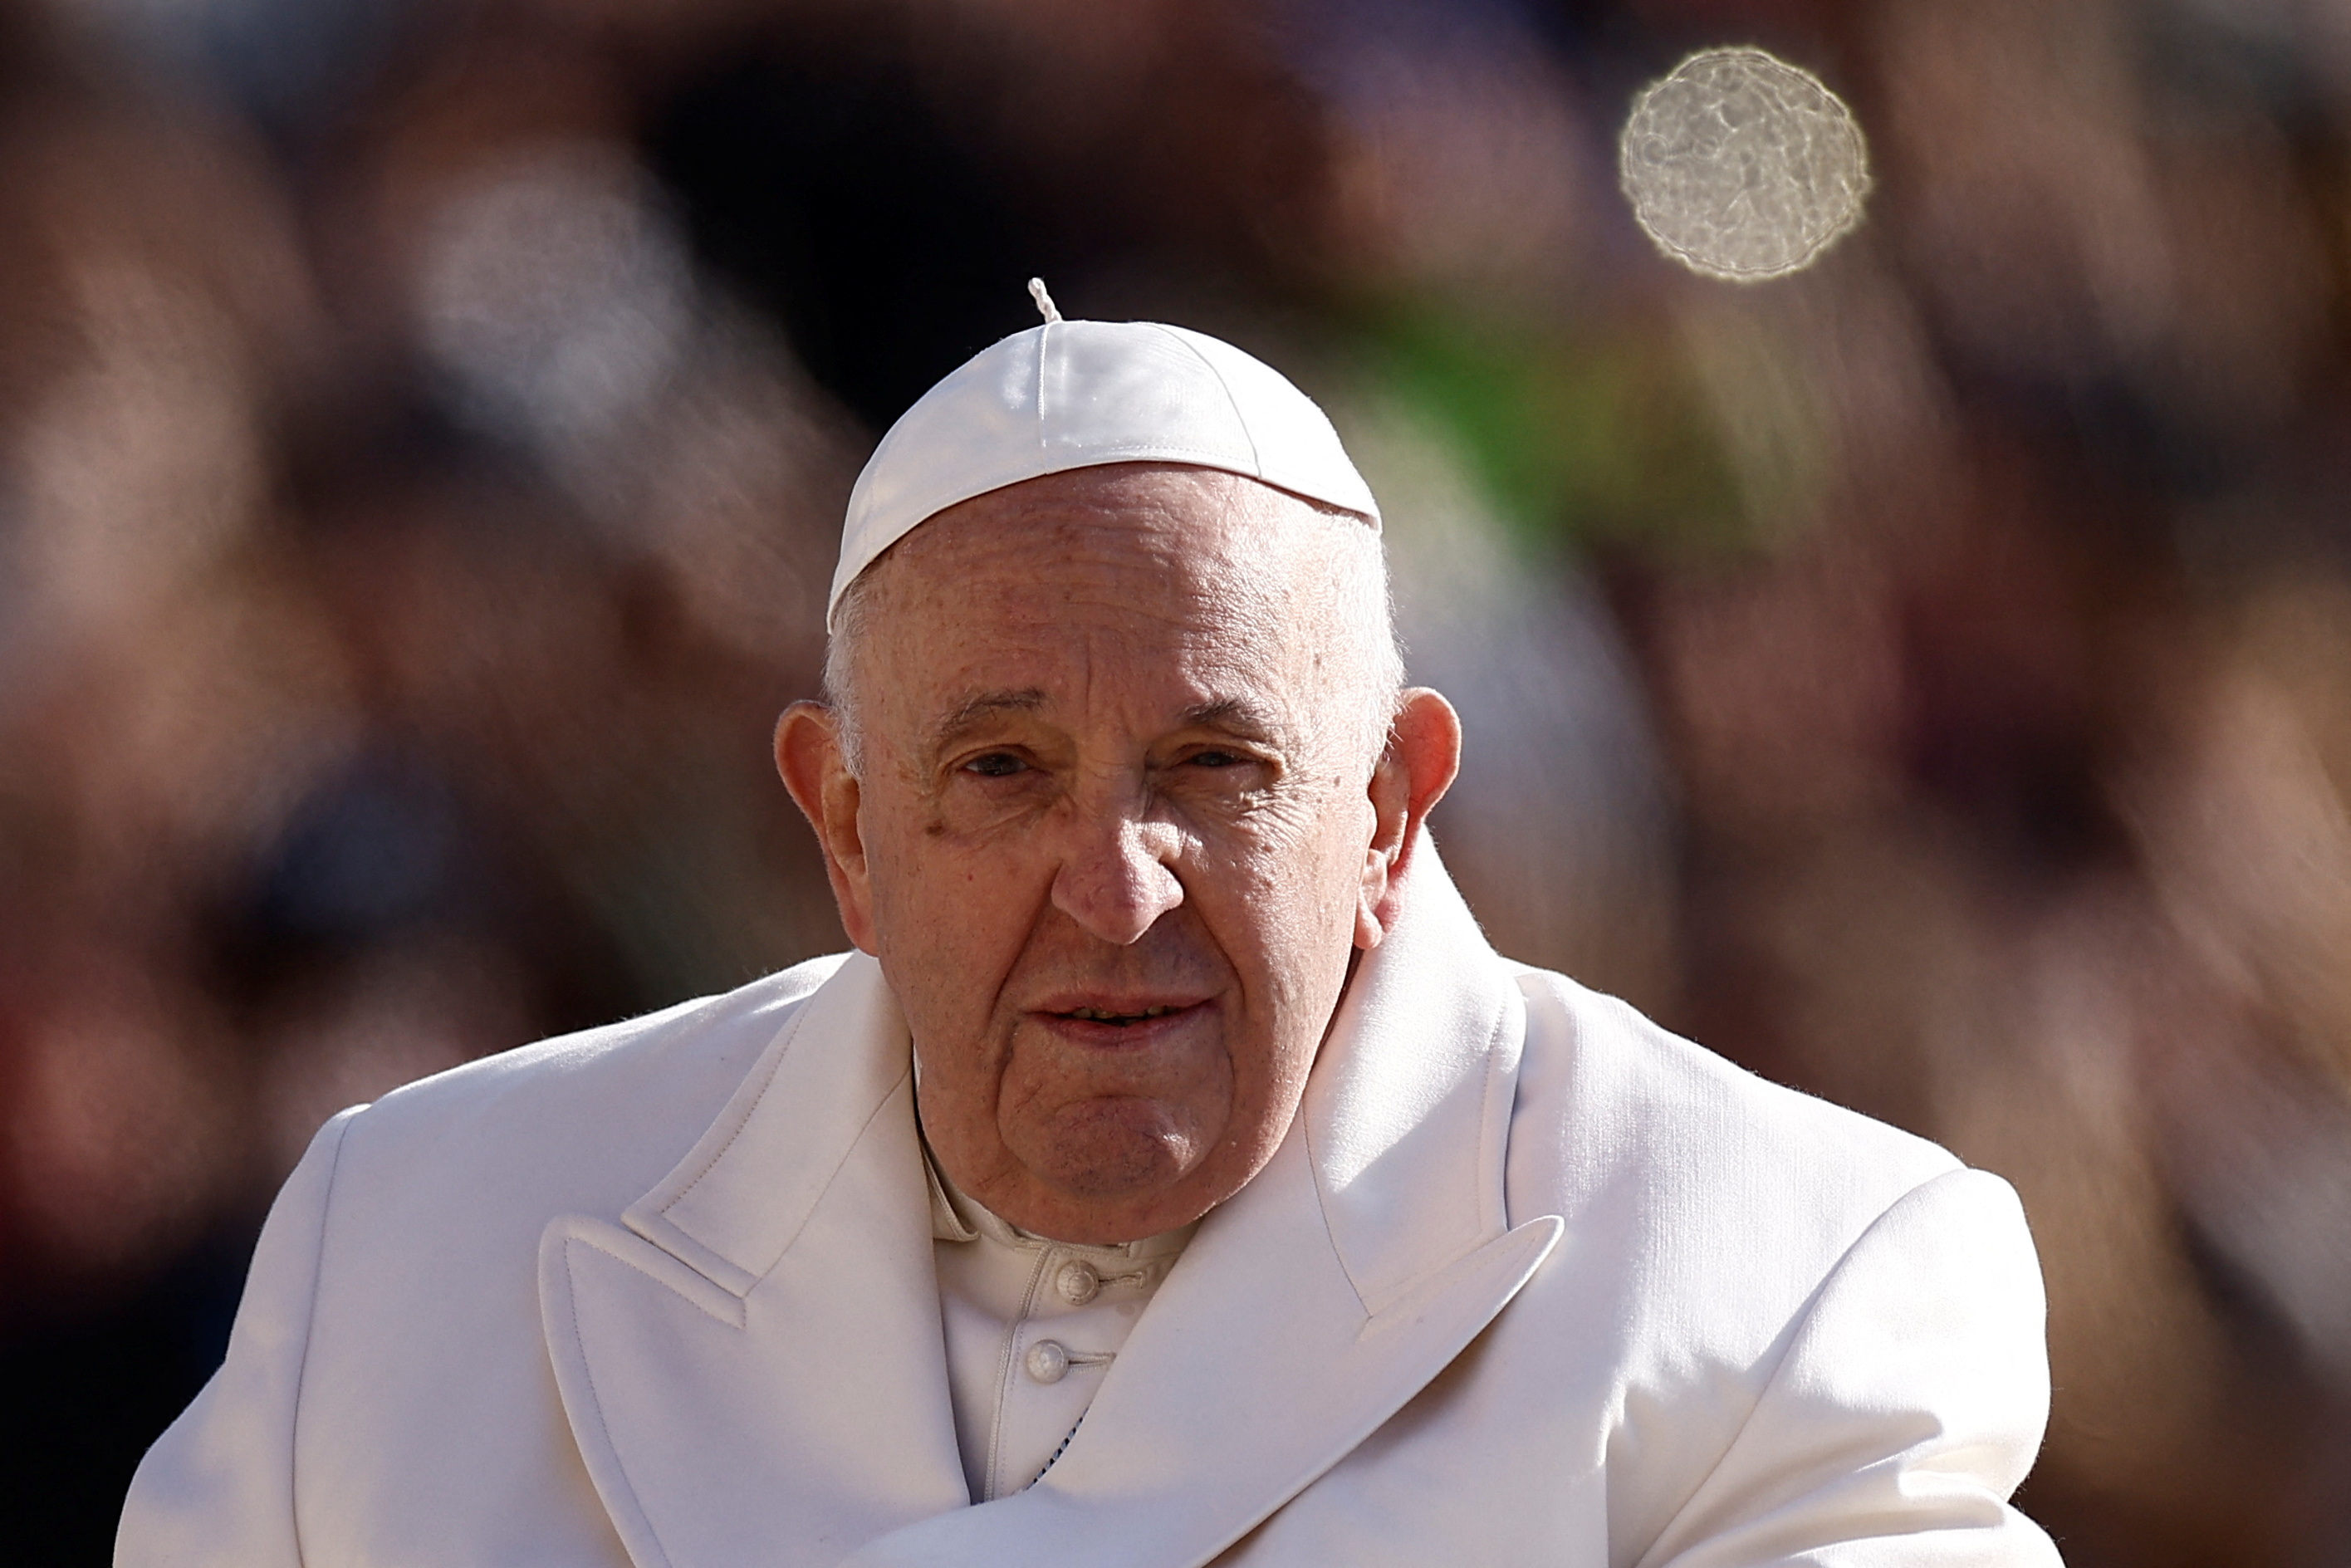 La salud del papa Francisco: le bajó la fiebre y se despertó de muy buen humor